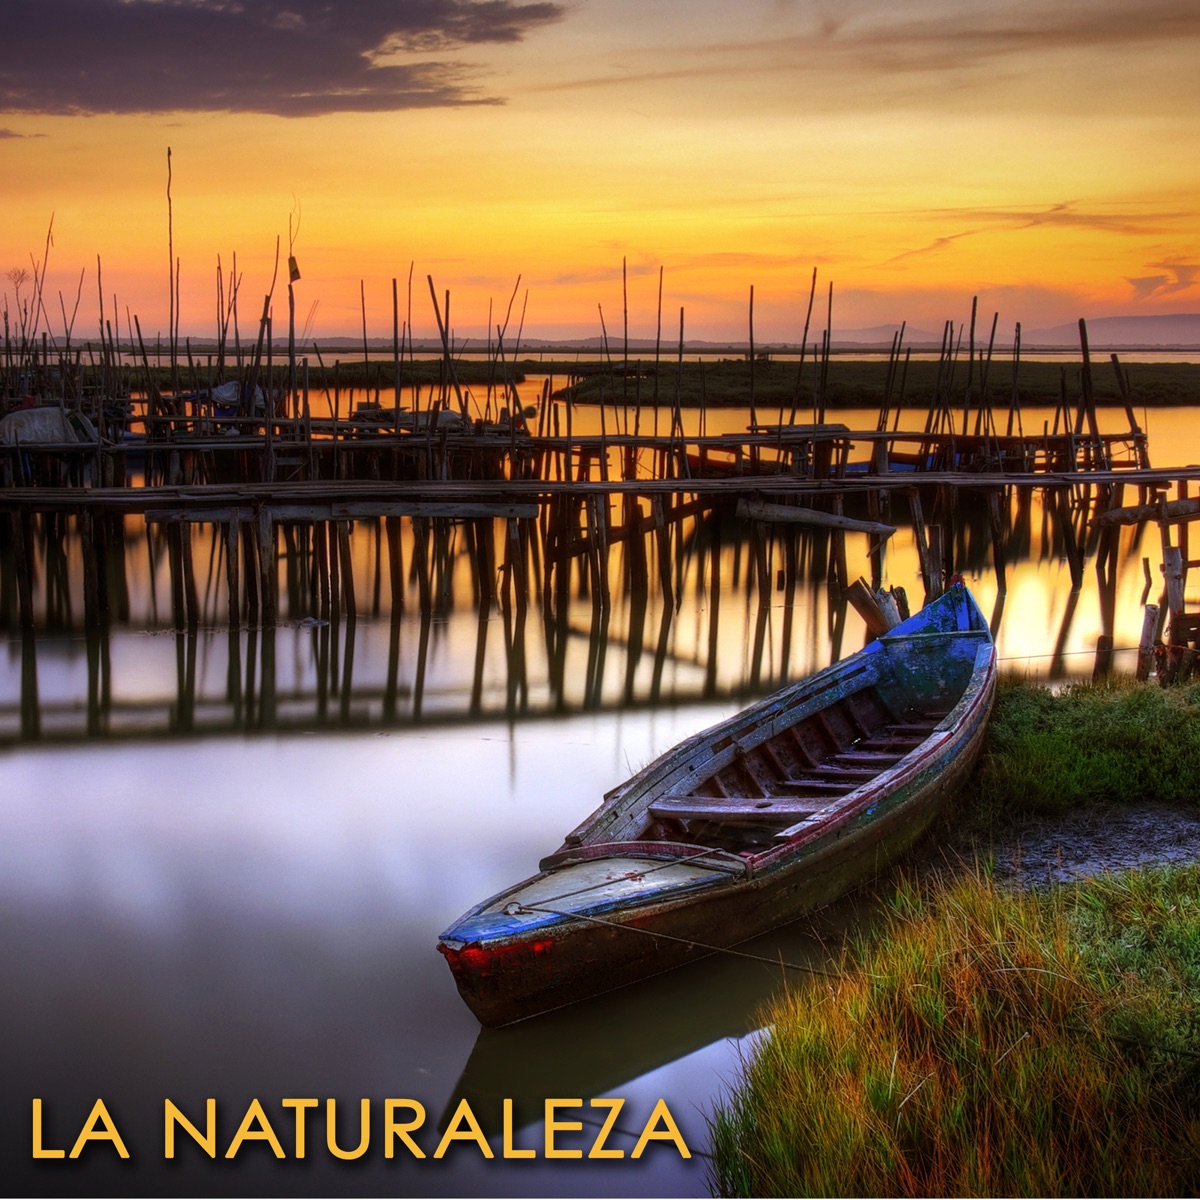 Música Relajante New Age con Sonidos de la Naturaleza - Album by Relajacion  Del Mar - Apple Music